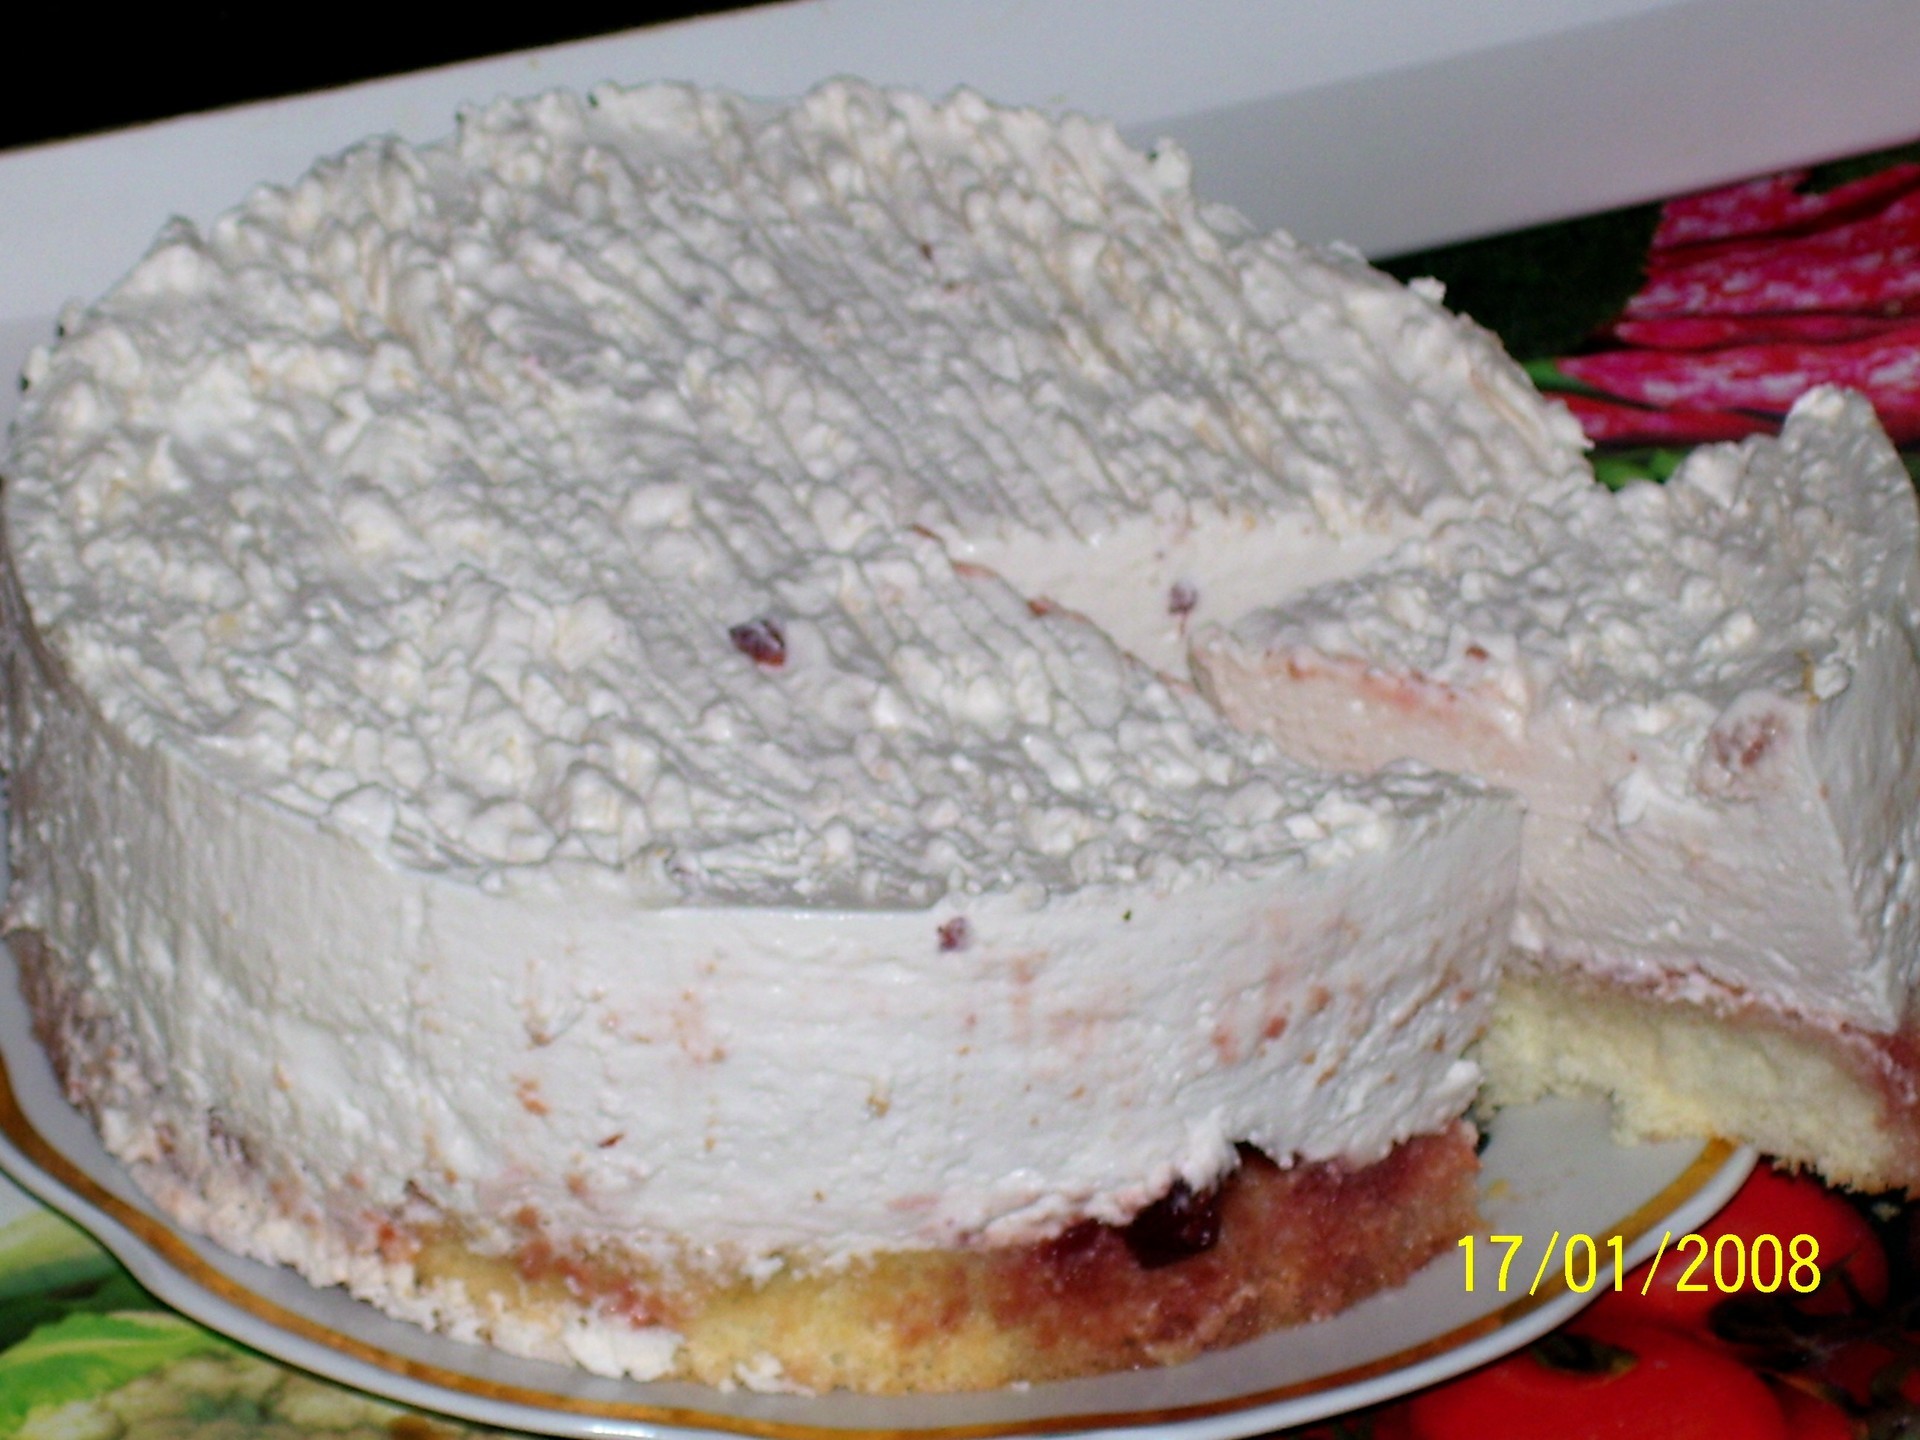 Торт с клубникой - рецепты приготовления в домашних условиях бисквитного, муссового и украсить ягодами